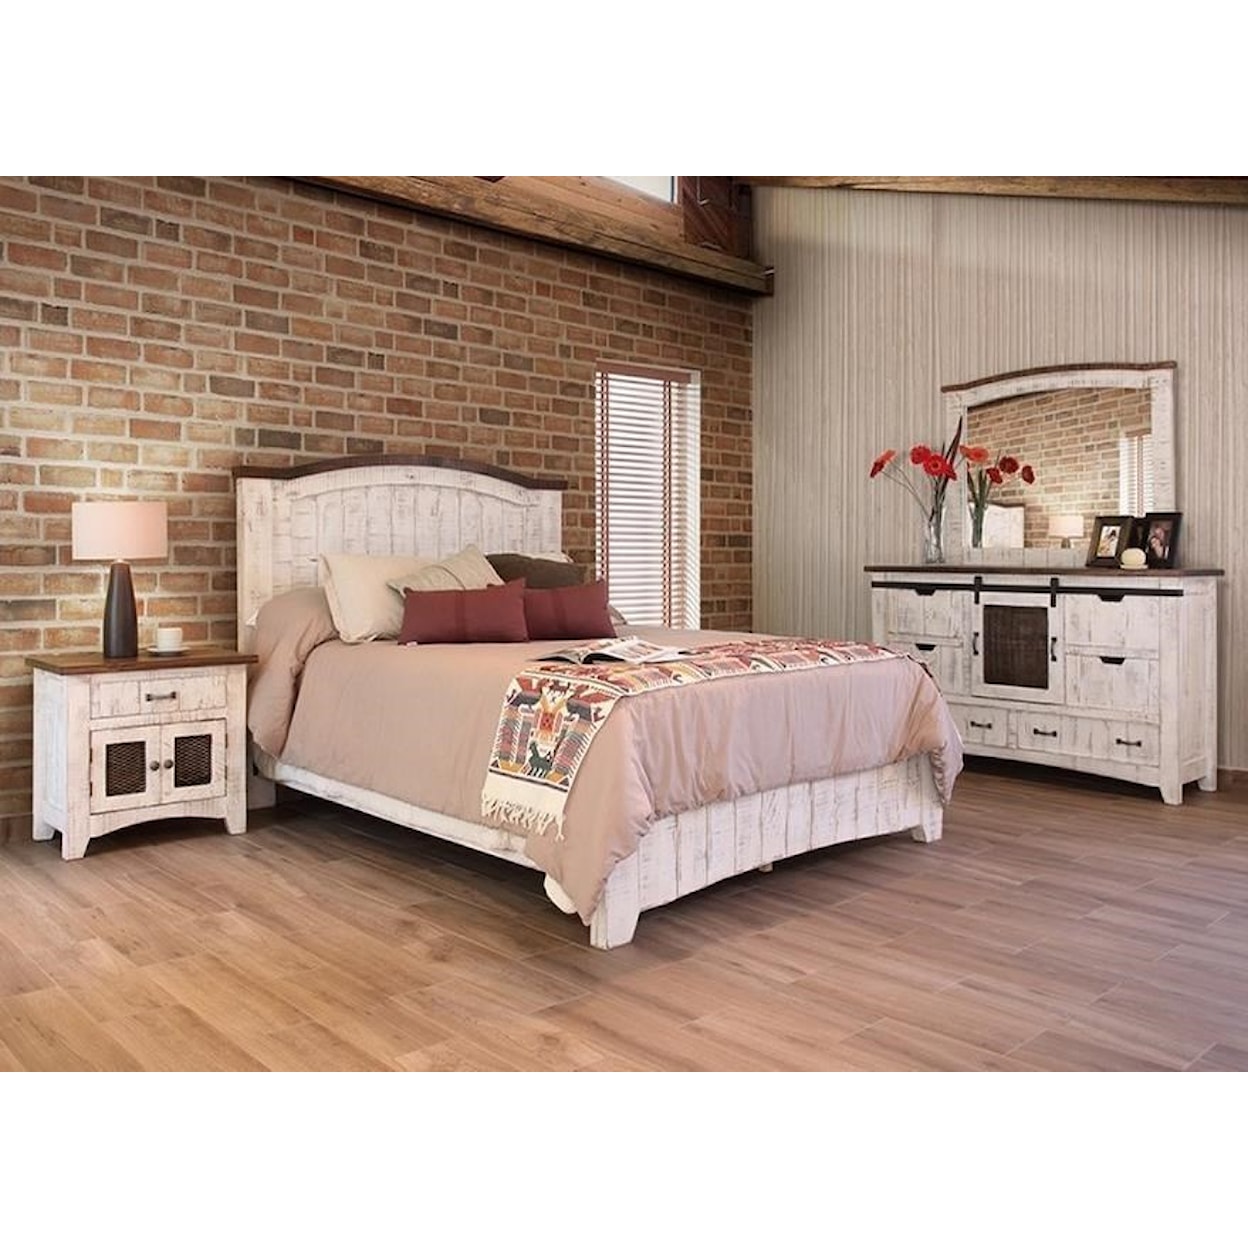 International Furniture Direct Pueblo Queen Bed